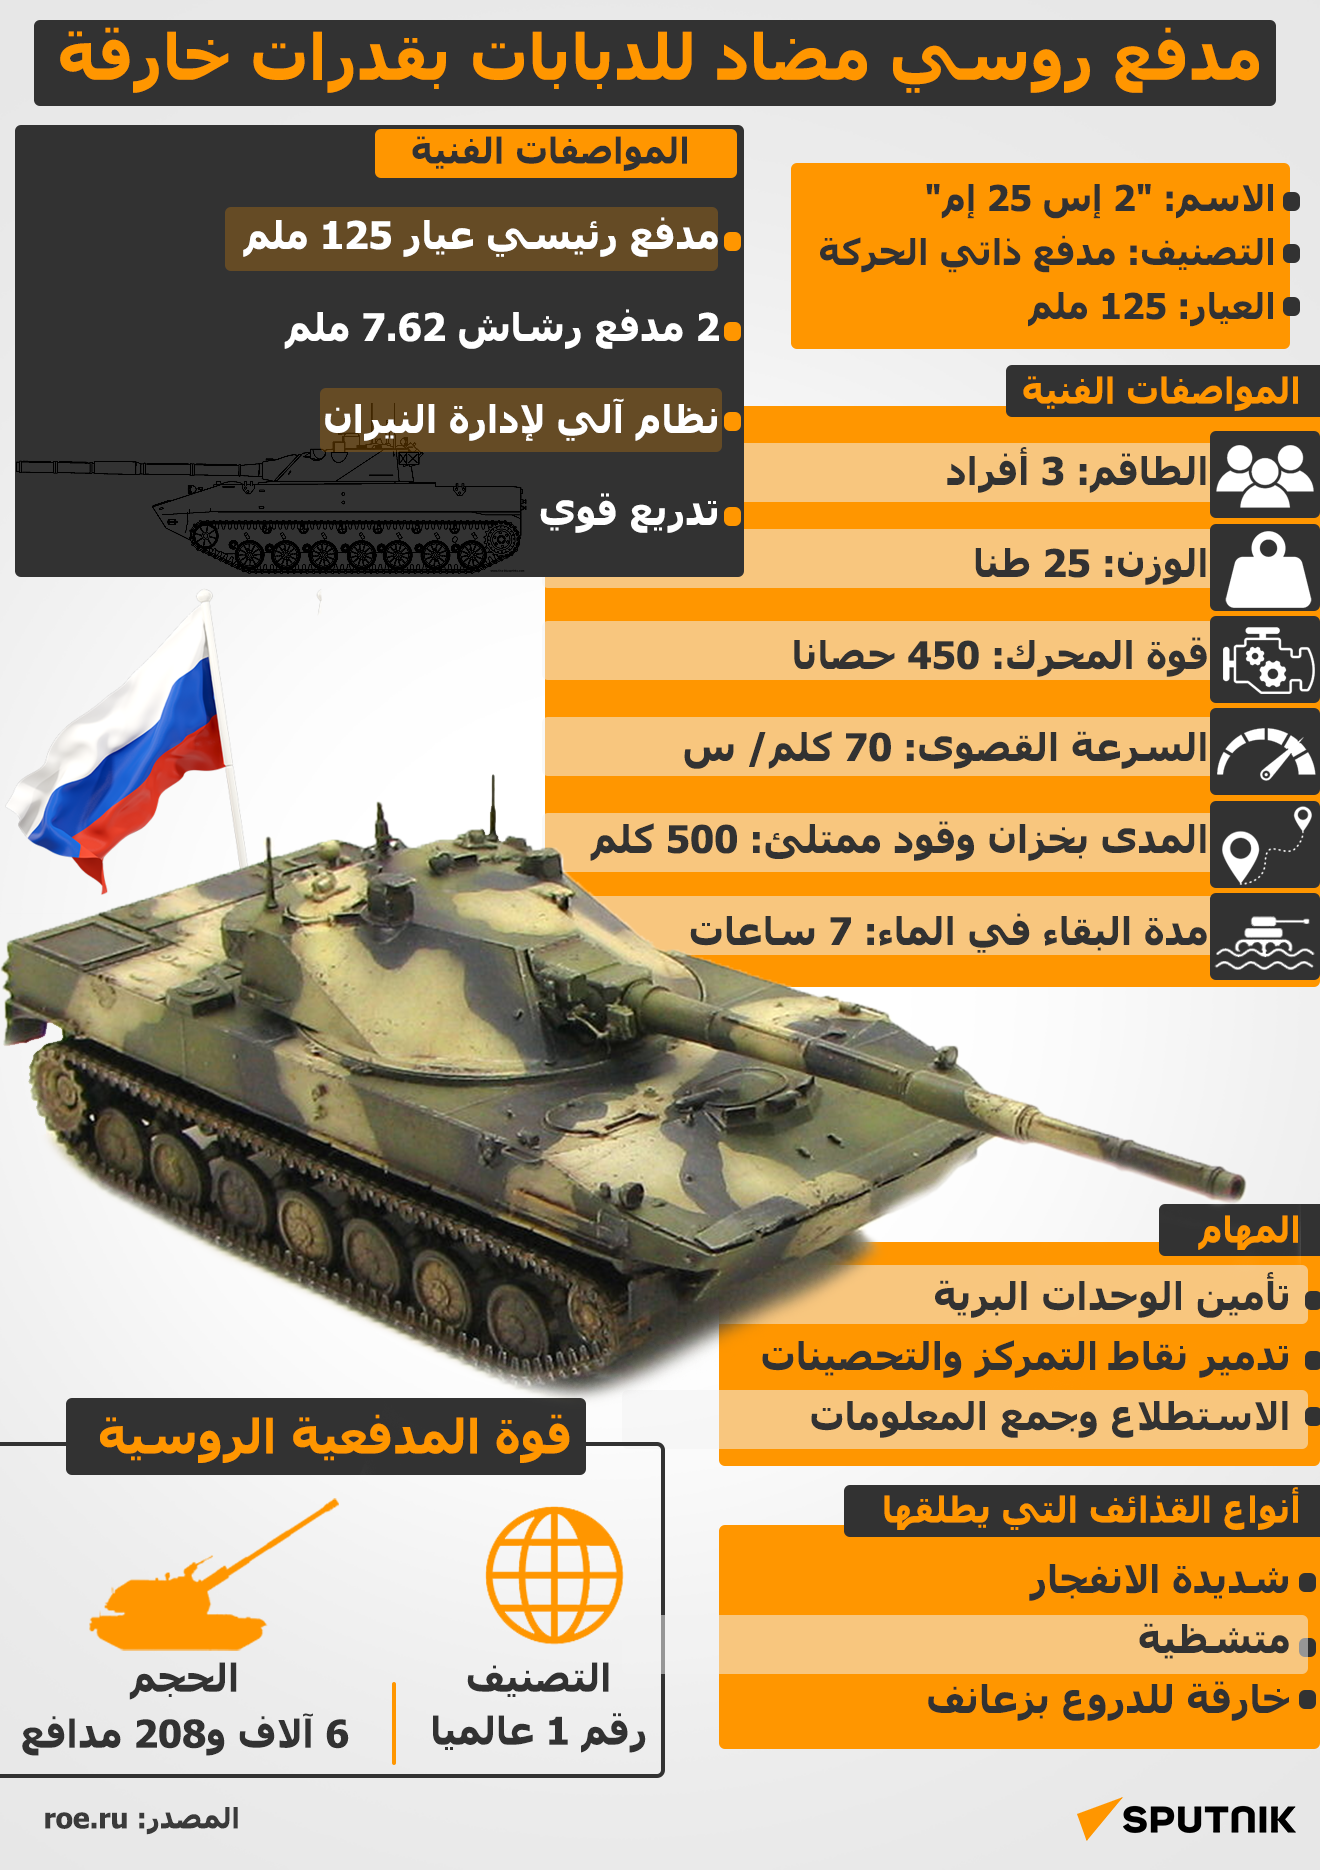 مدفع روسي مضاد للدبابات بقدرات خارقة - سبوتنيك عربي